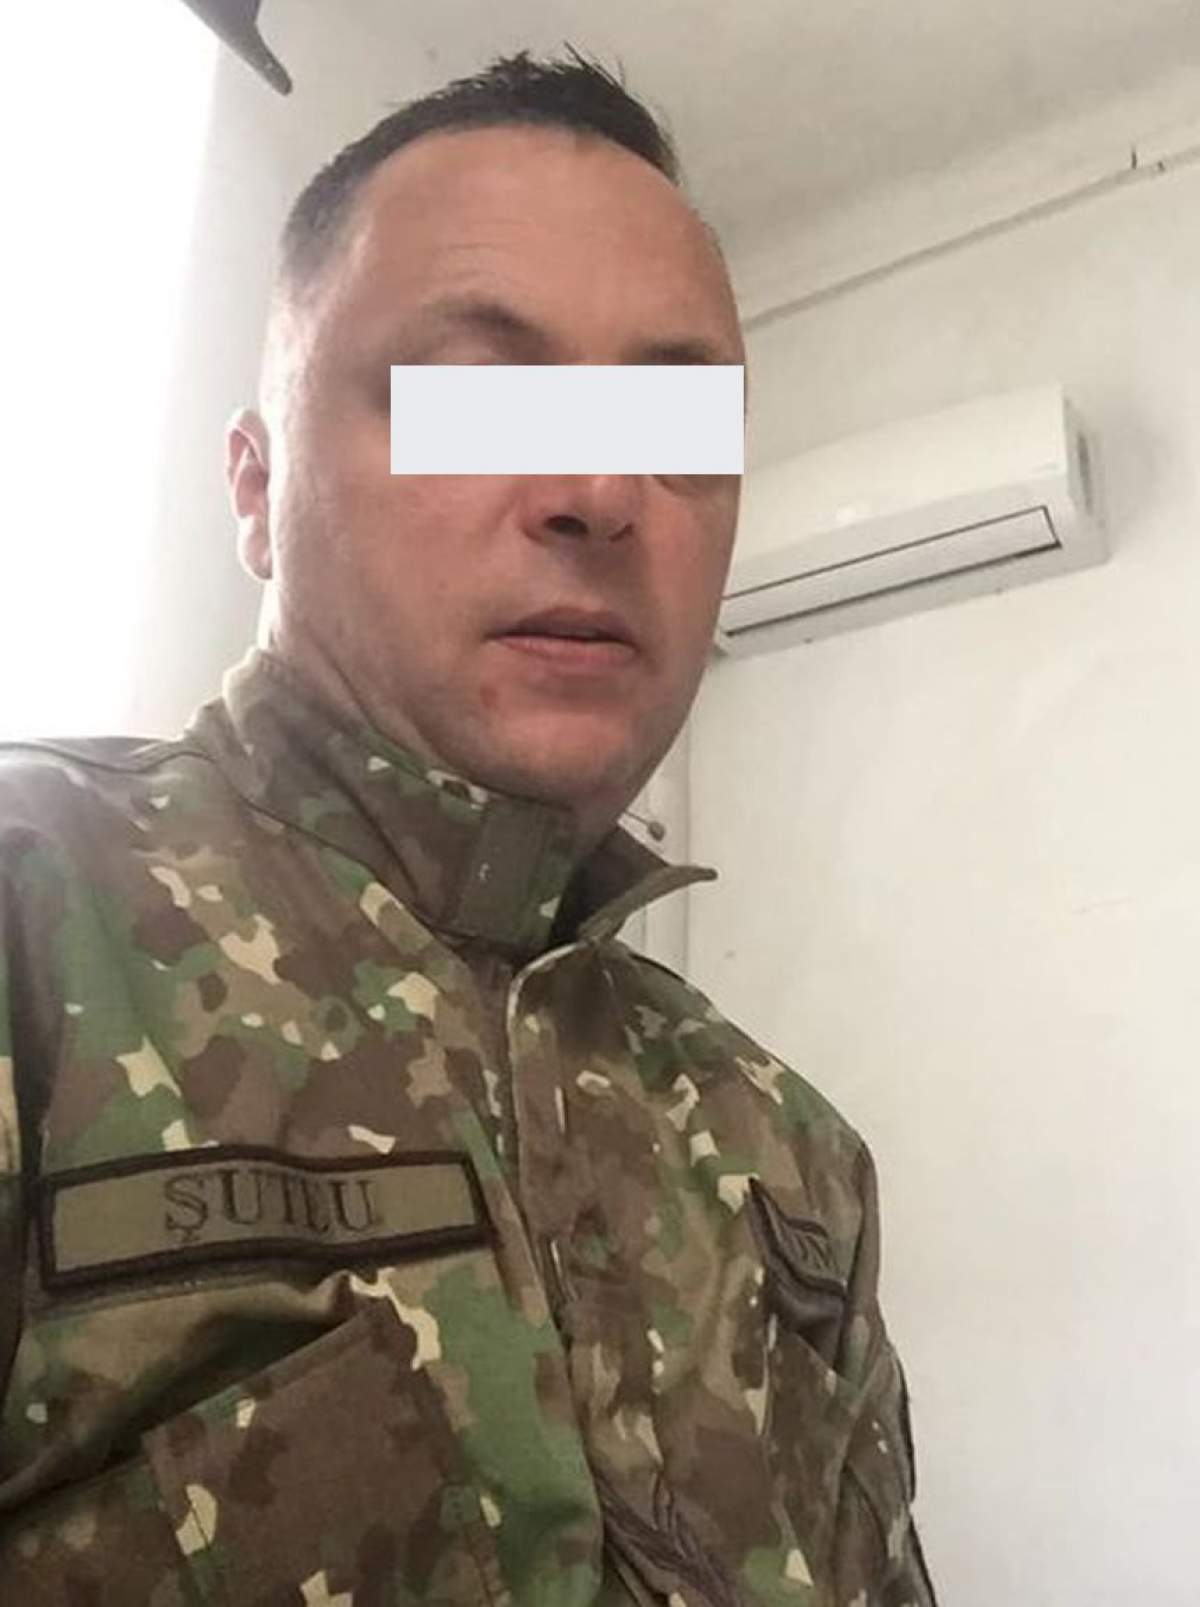 El este militarul care s-a sinucis în această dimineaţă, în Cluj. Felician avea 41 de ani şi nu era căsătorit